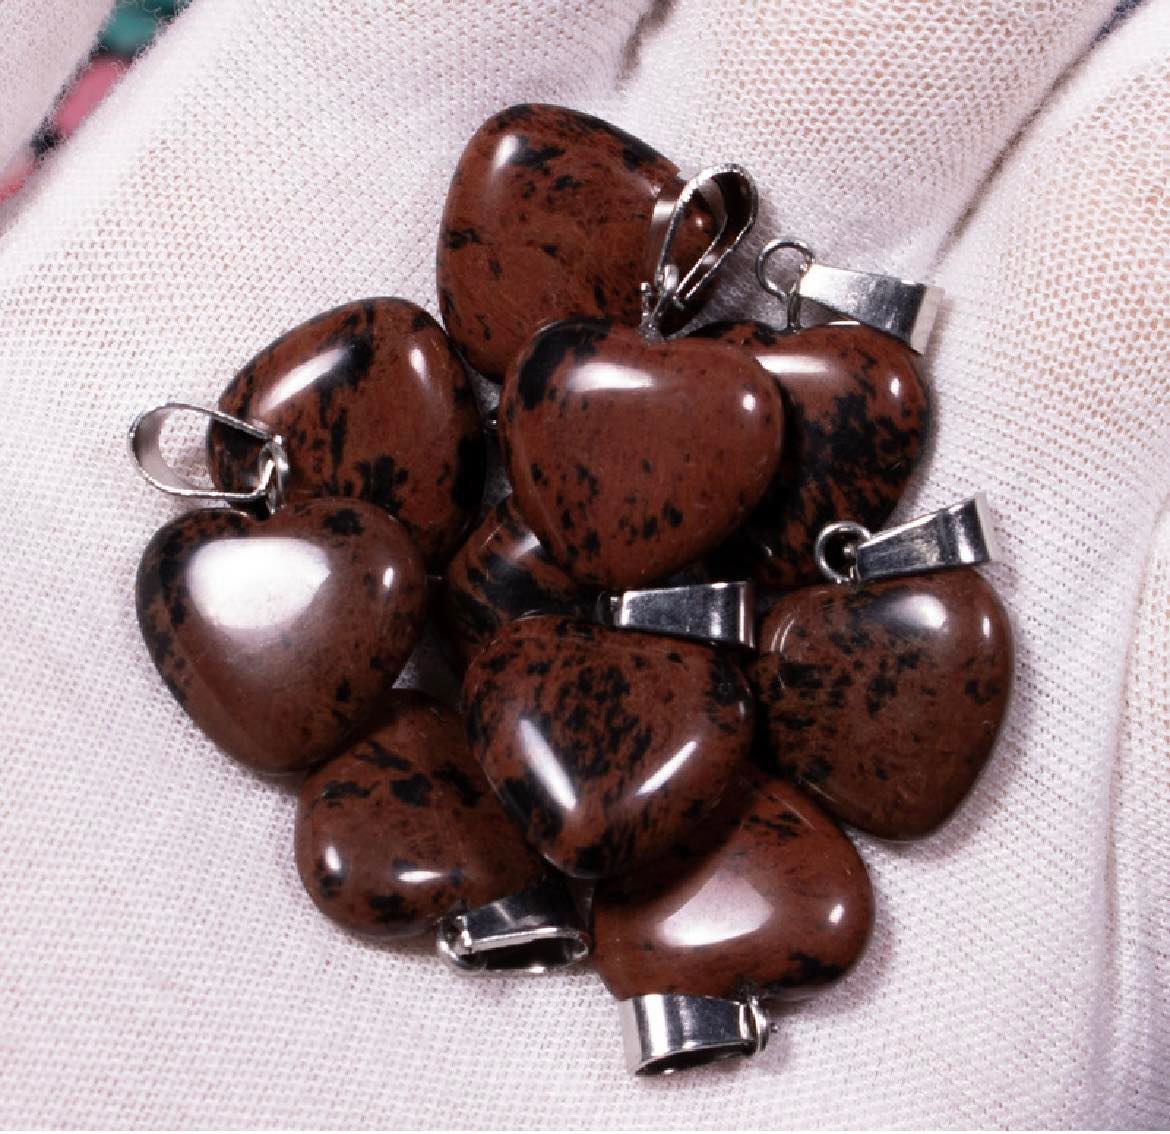 Mahogany Obsidian Heart Pendant - 15mm - 2g - China - NEW123